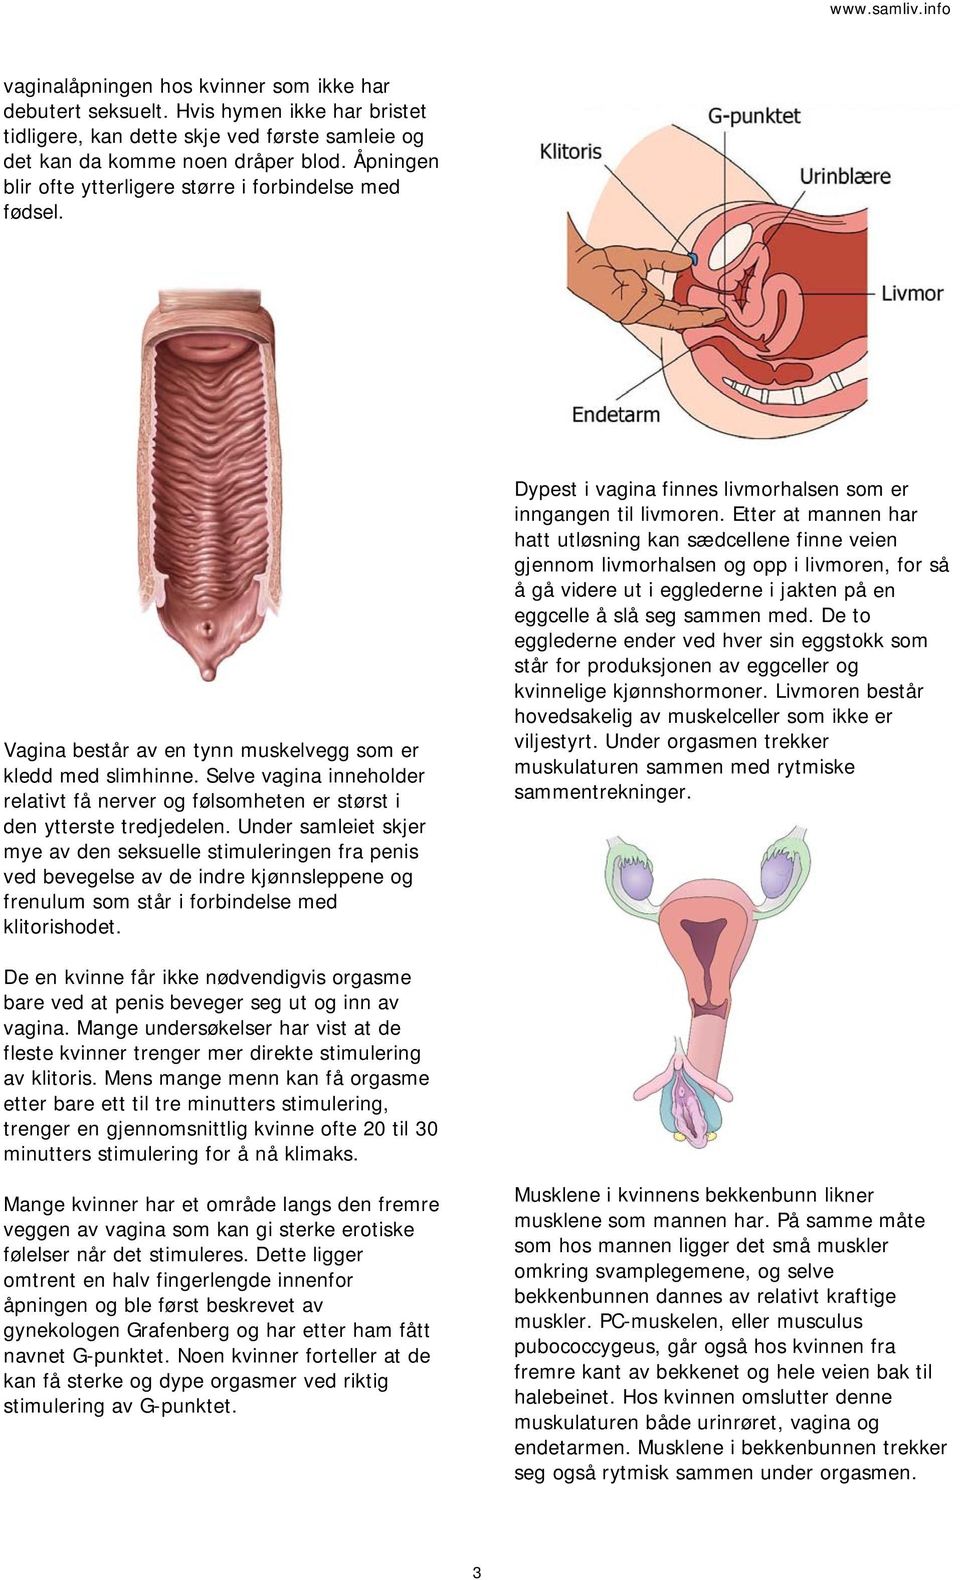 Selve vagina inneholder relativt få nerver og følsomheten er størst i den ytterste tredjedelen.